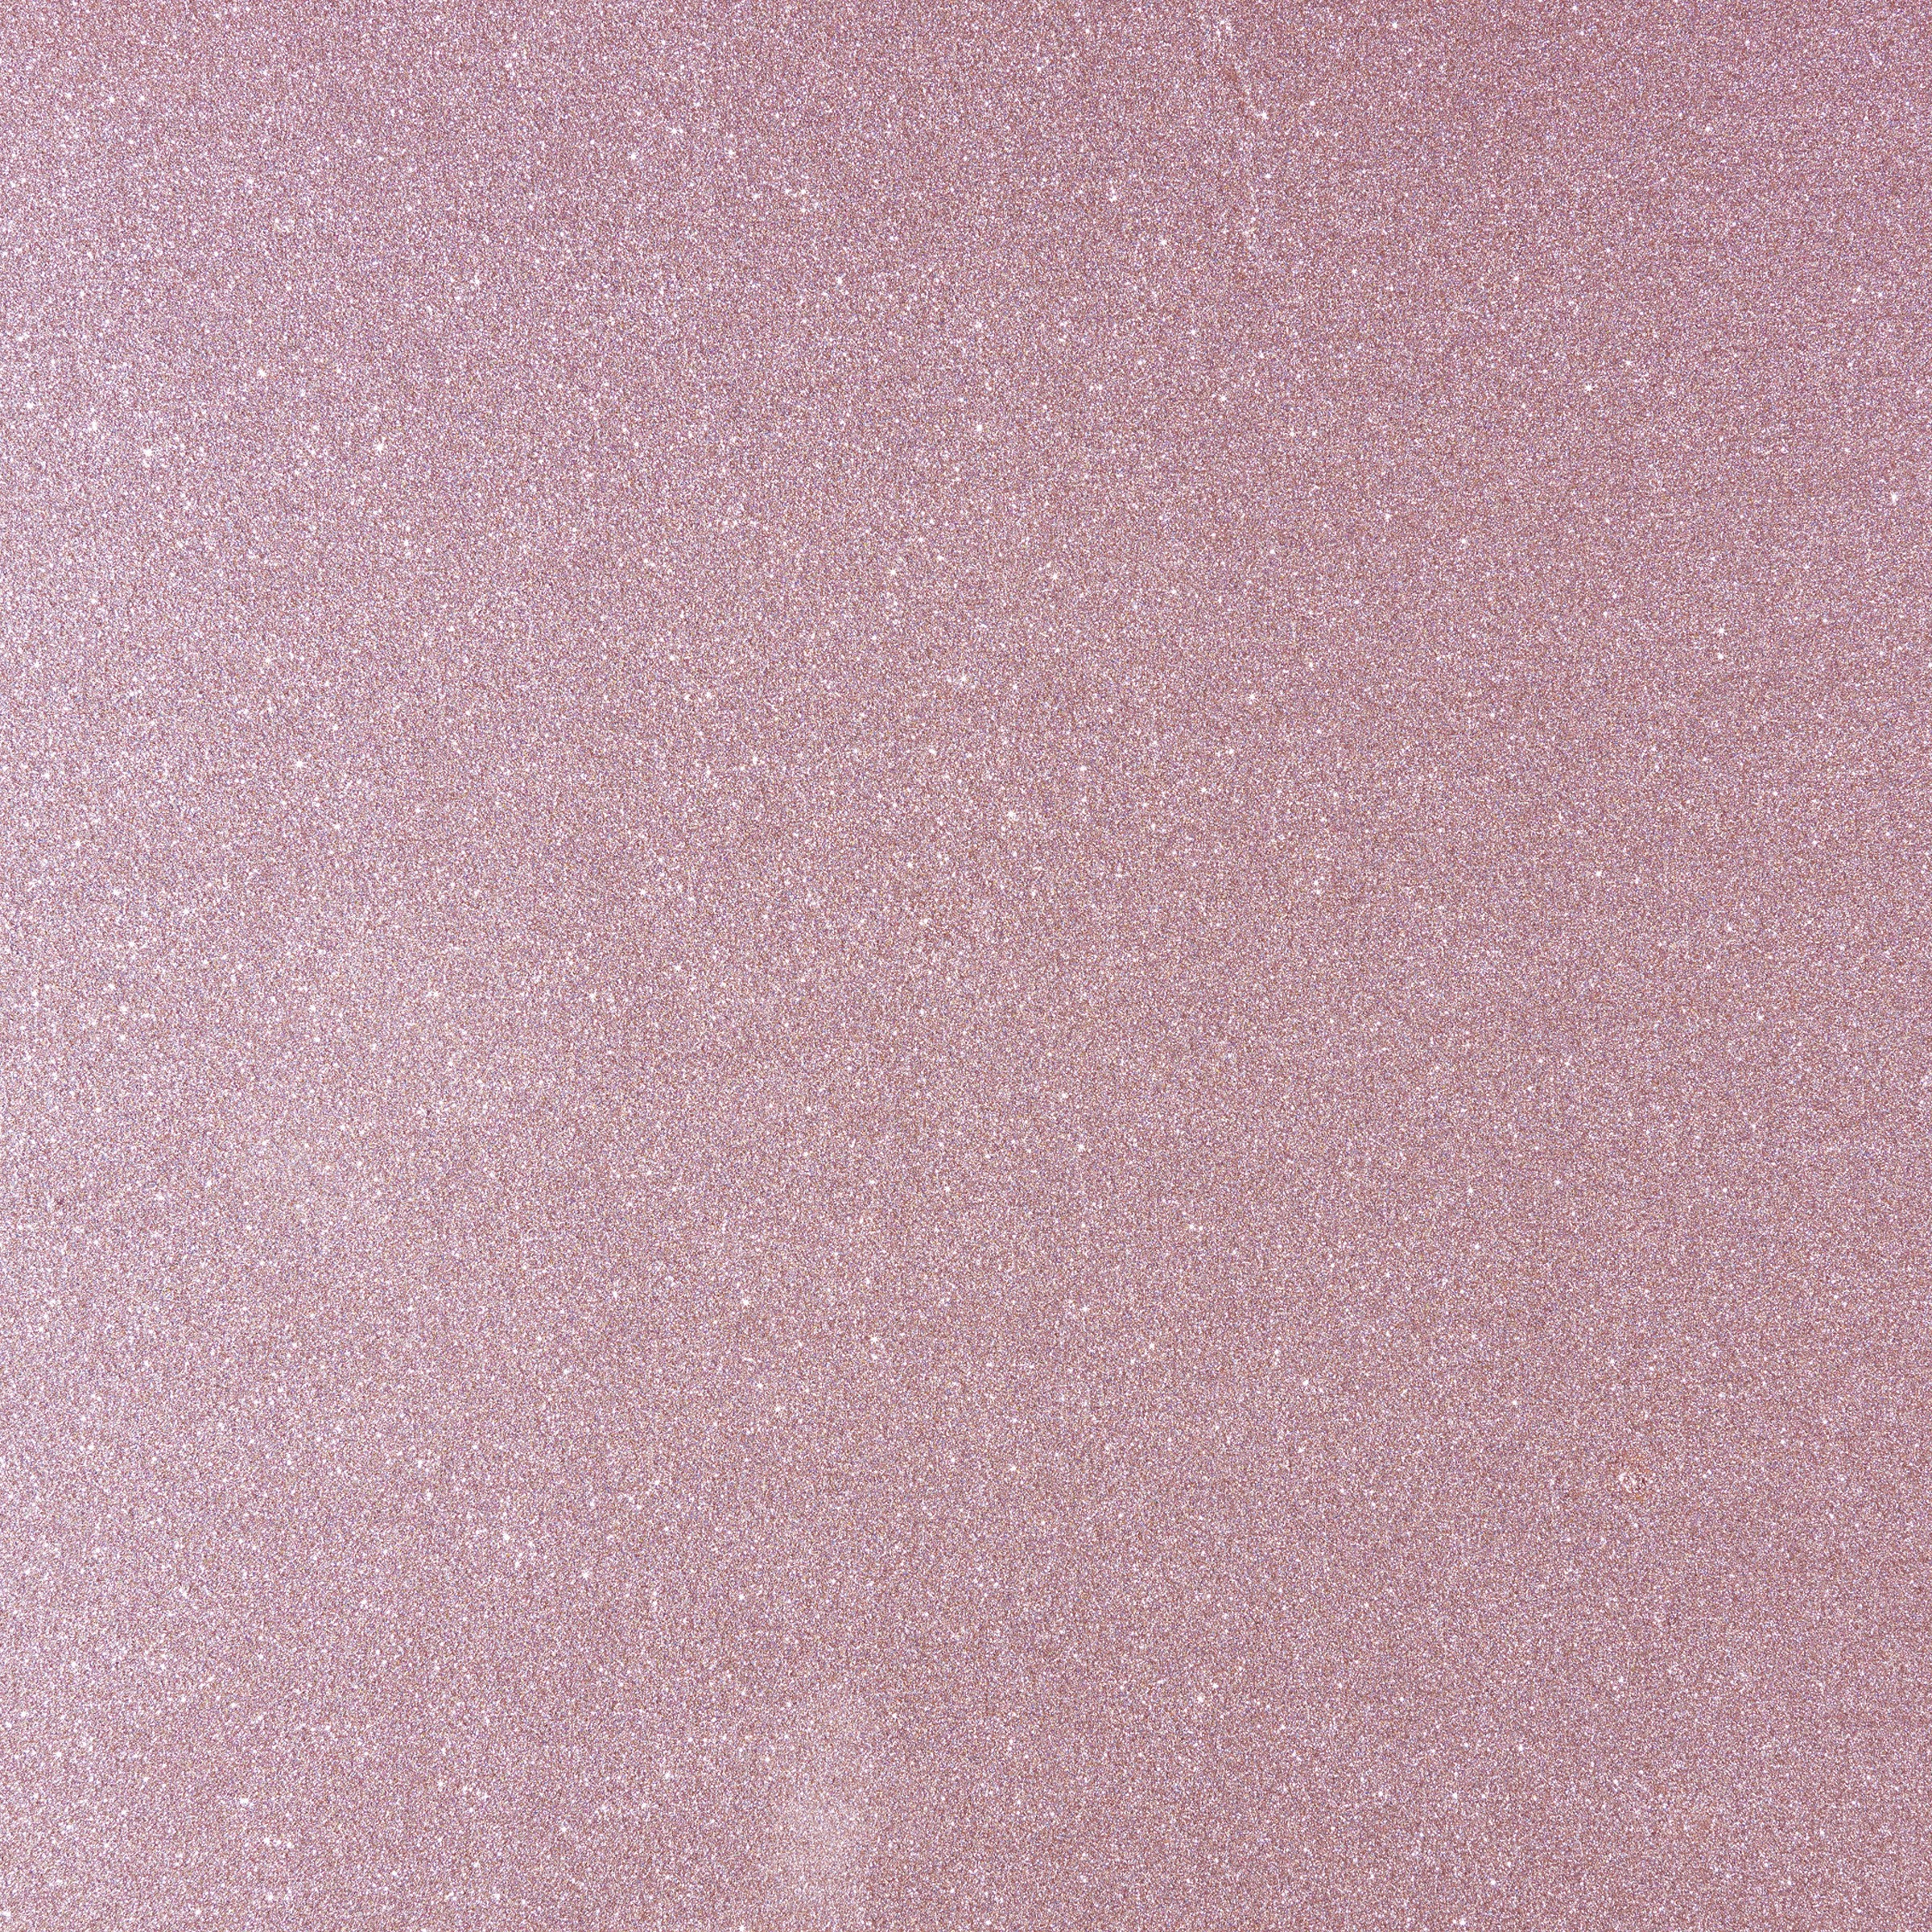 Natuurverfwinkel - Little Stars - Glittermagie Eenhoornglans - 0,25L - image